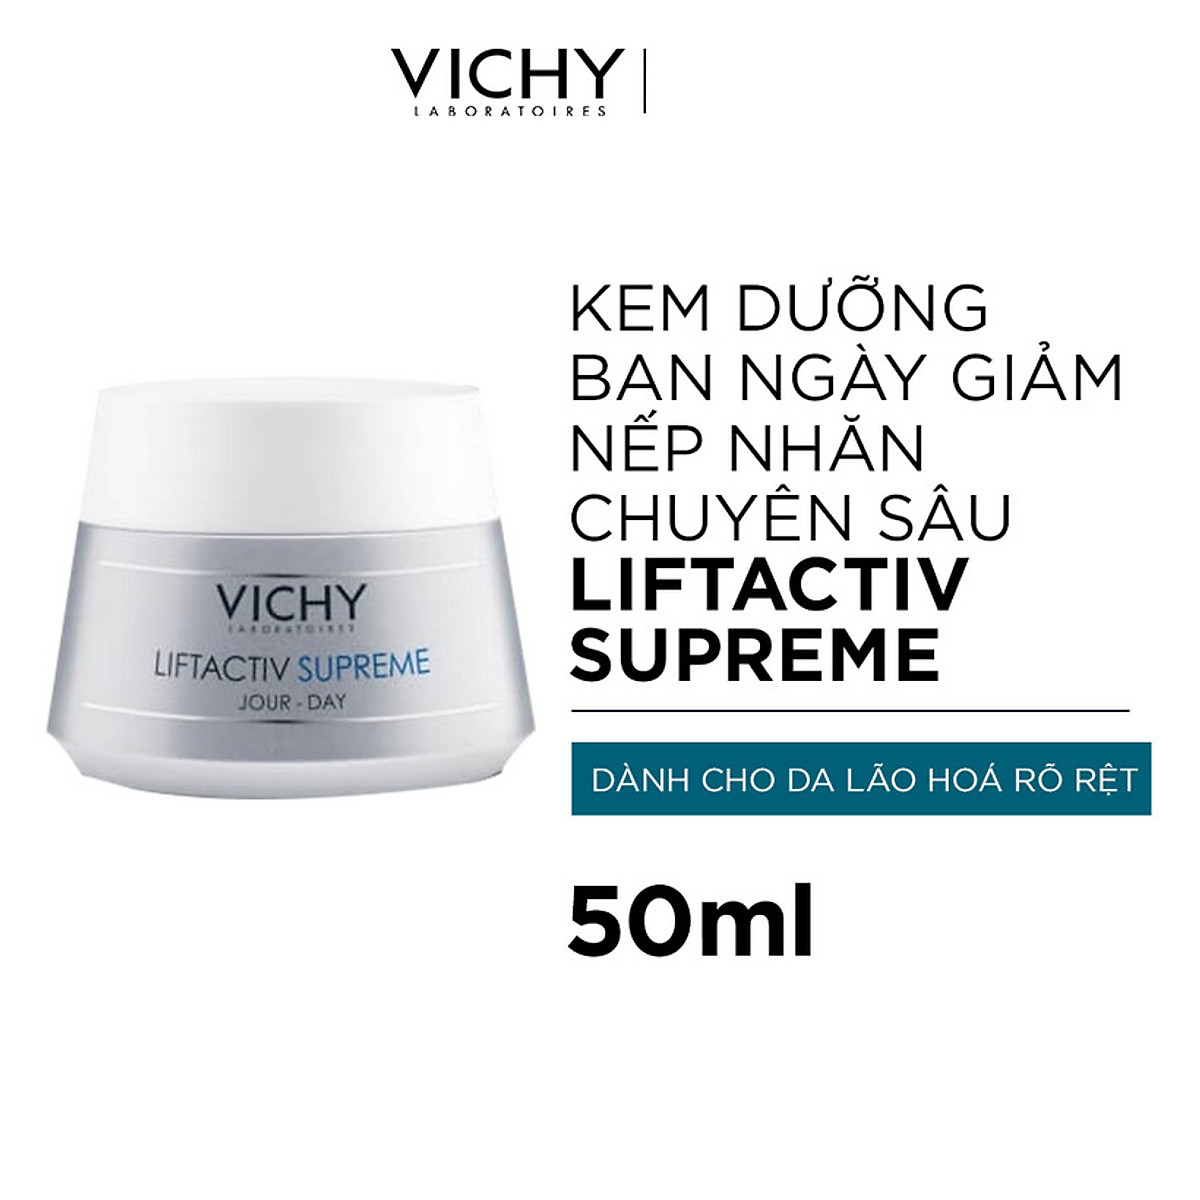 Kem Dưỡng Vichy Ngừa Lão Hóa & Làm Săn Chắc Da Ban Ngày 50ml Liftactiv Supreme Day Cream